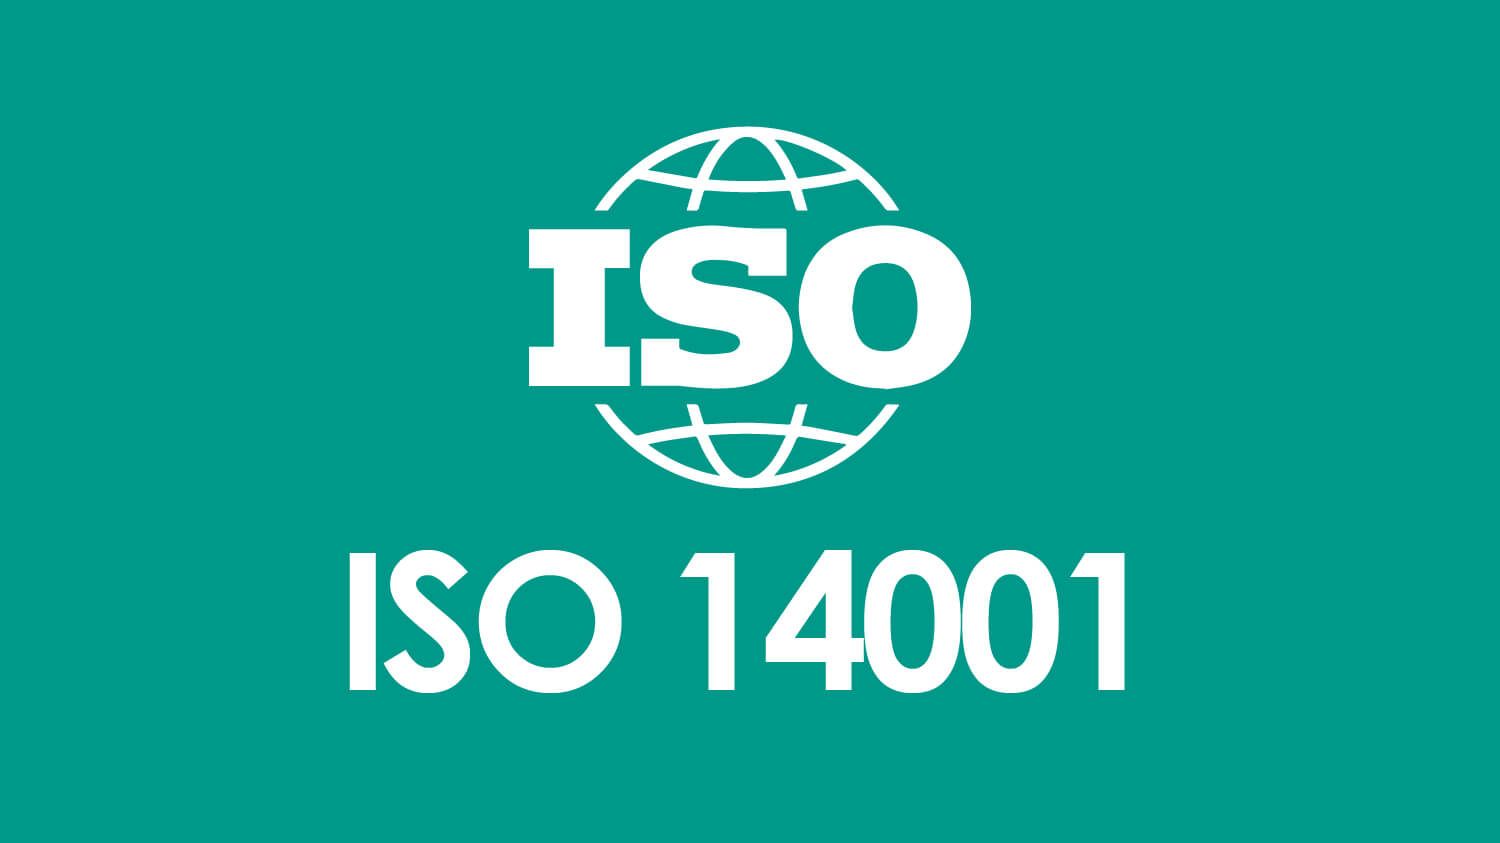 前往 ISO 14001 : 2015 環境管理系統 Environmental Management Standards 瞭解更多